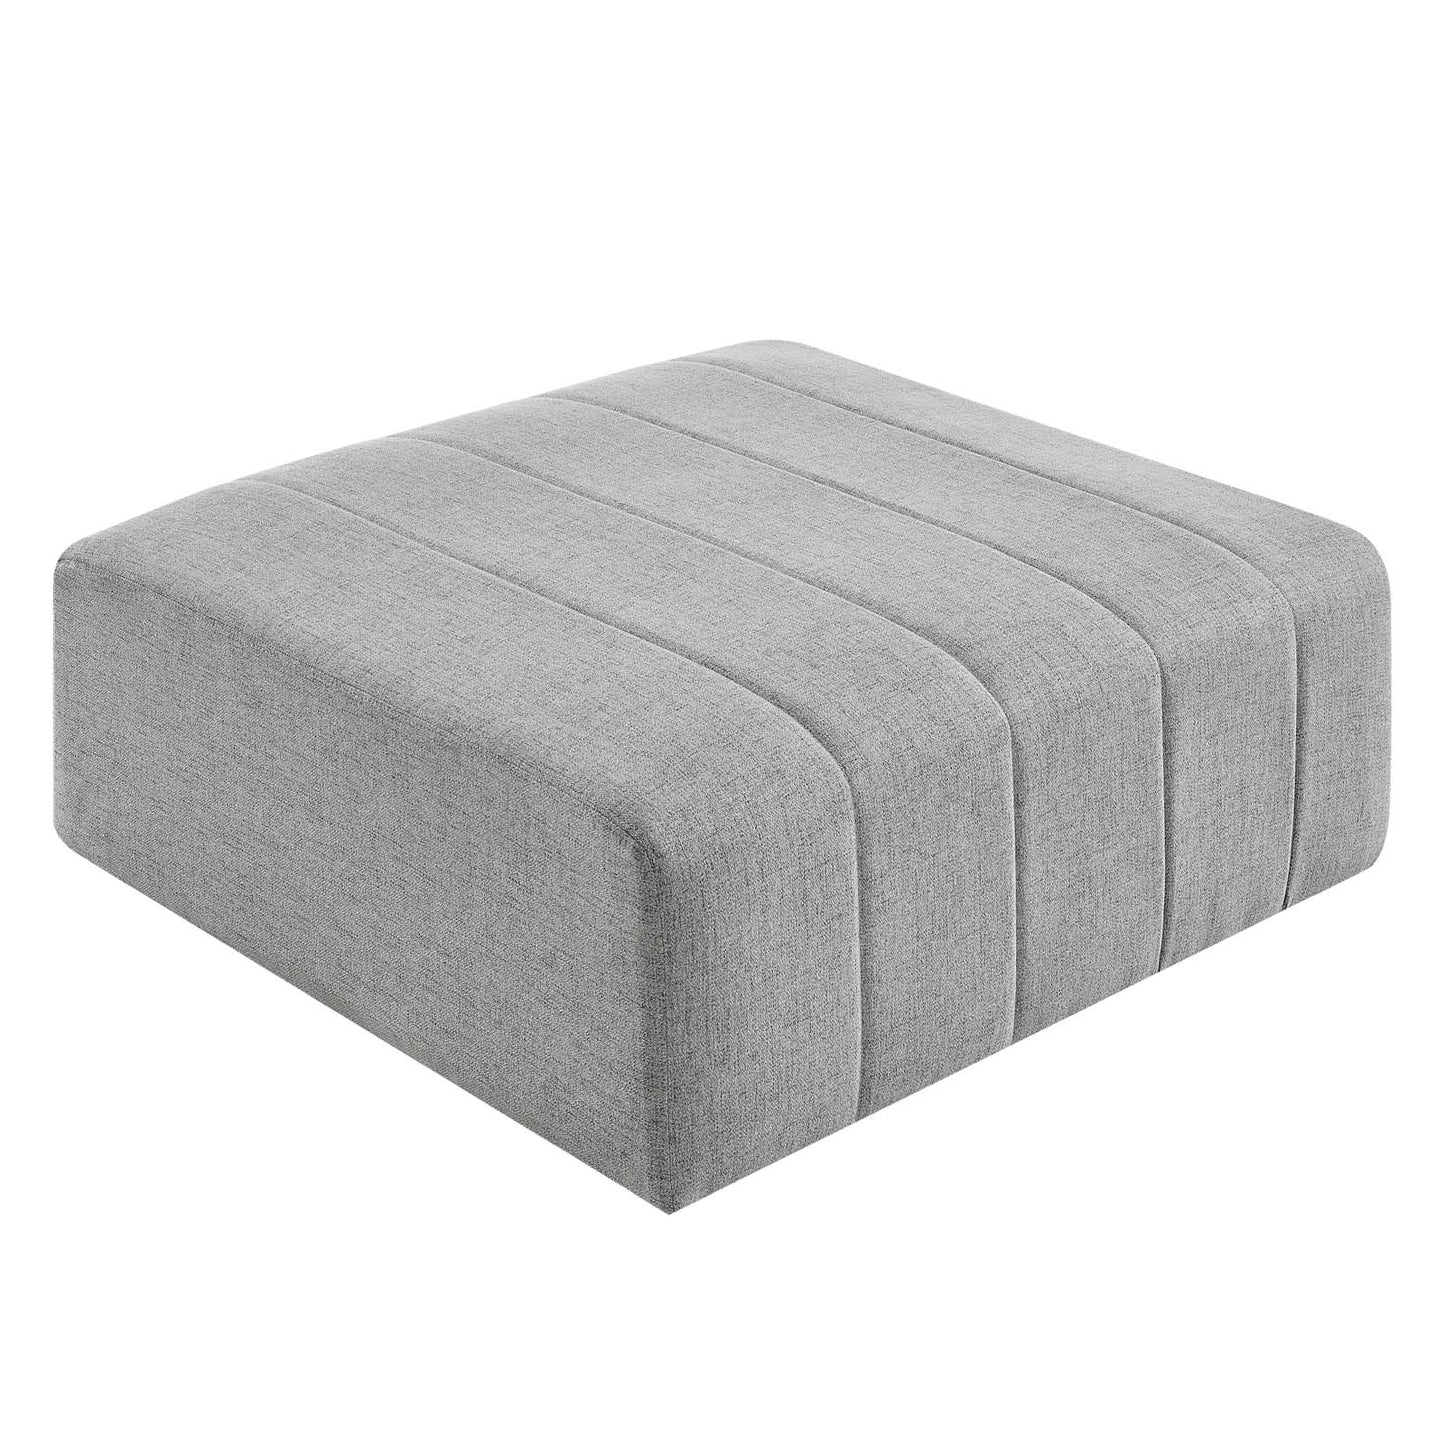 Bartlett Upholstered Fabric 6-Piece Sectional Sofa Light Gray EEI-4533-LGR